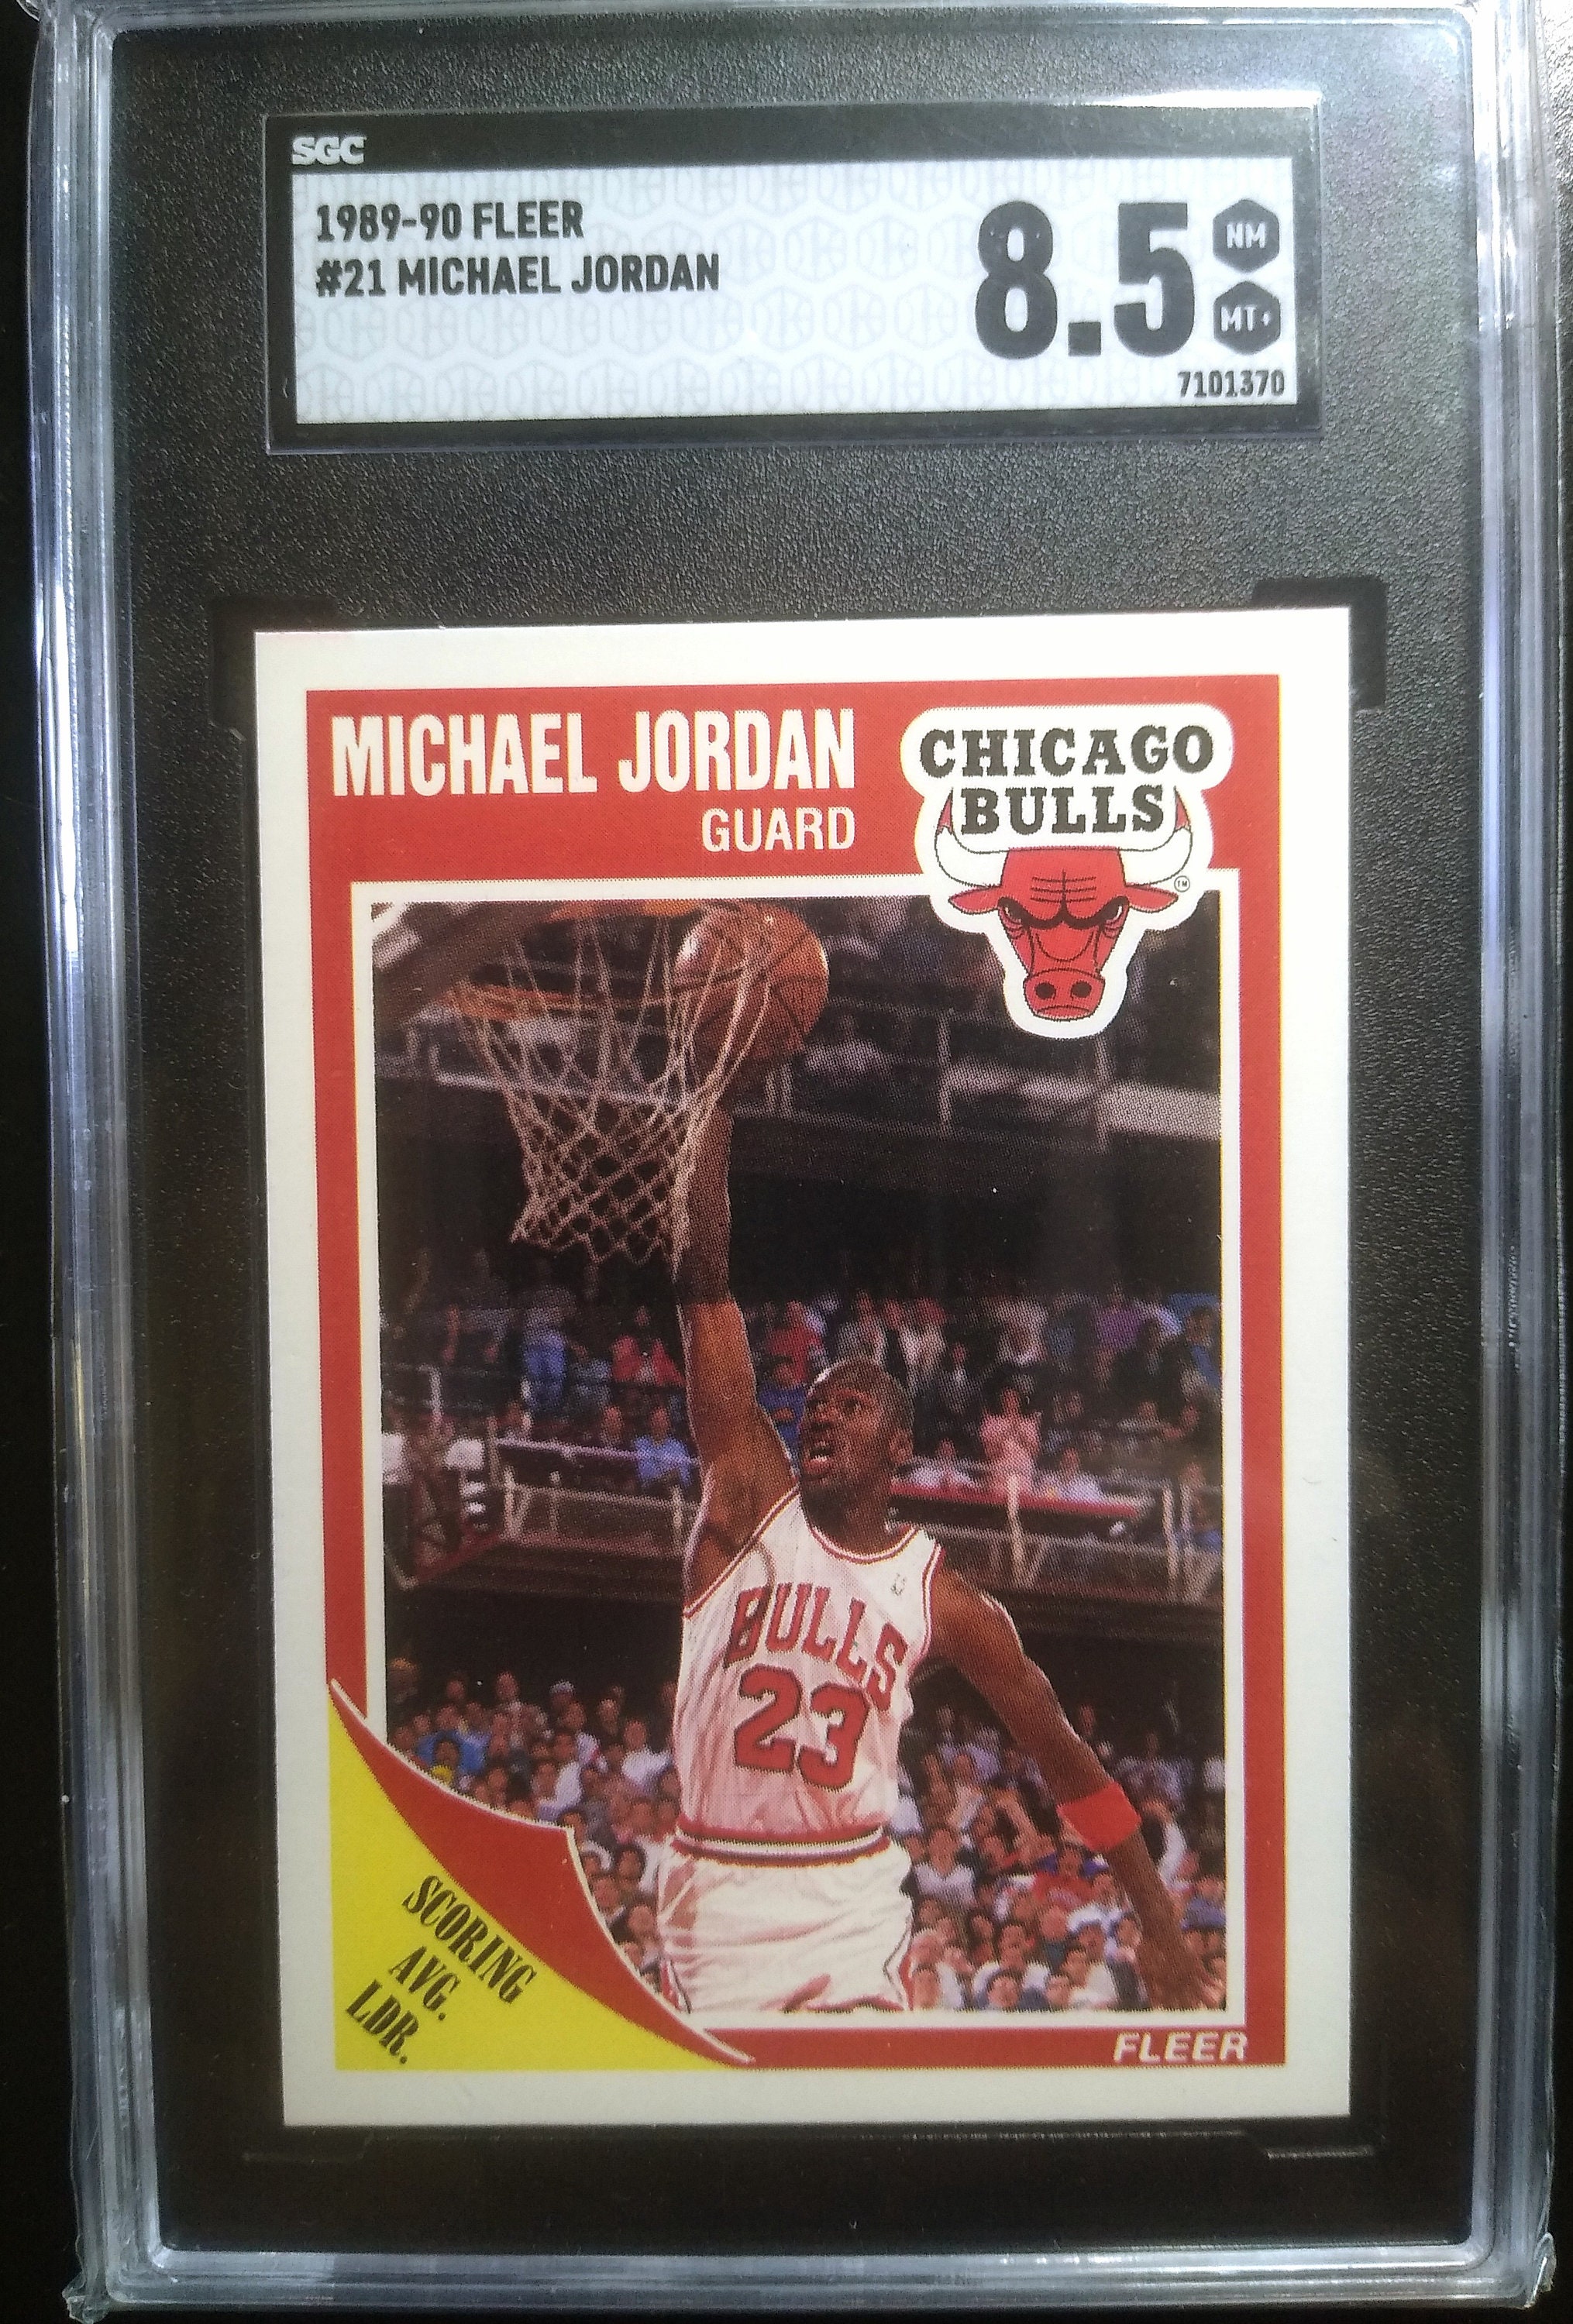 1997-98 UD Michael Jordan Logoman - Fake ?